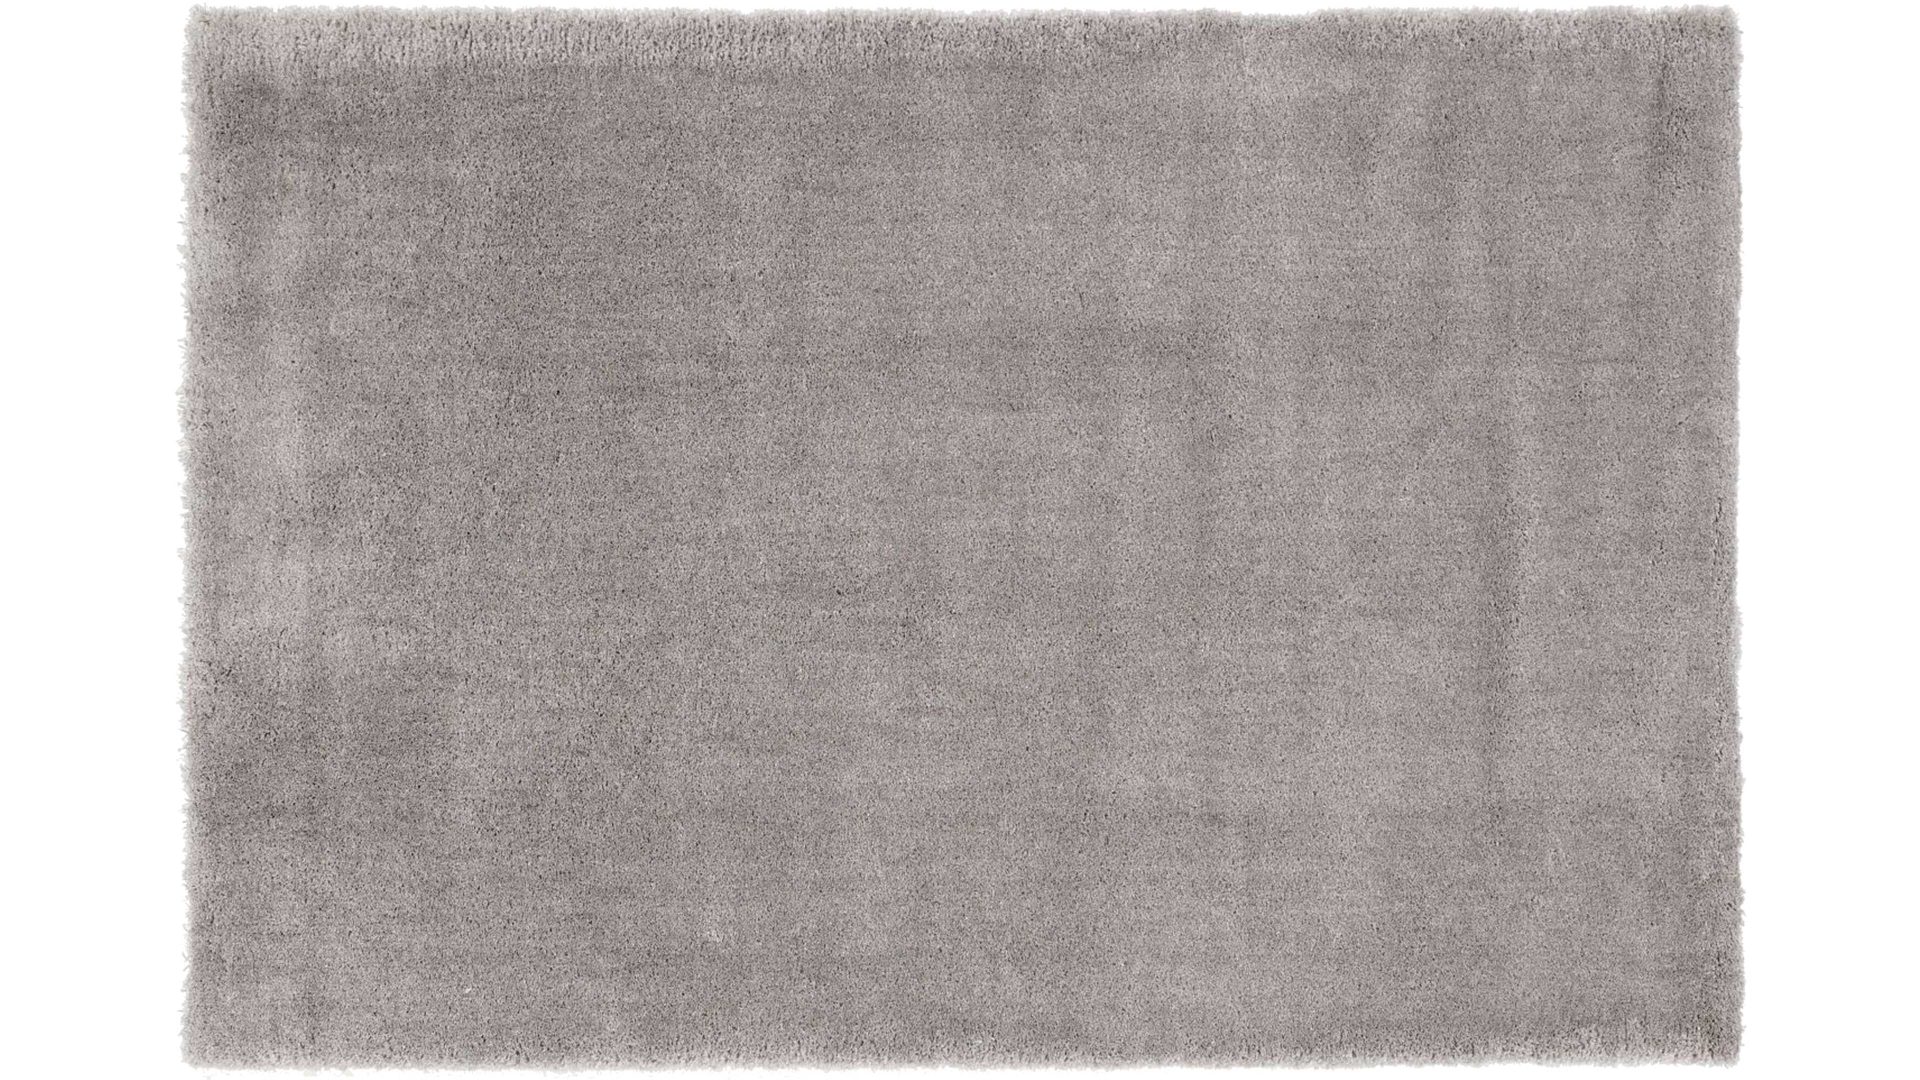 Shaggyteppich Oci aus Kunstfaser in Grau Shaggyteppich Royal Shaggy für Ihre Wohnaccessoires graue Kunstfaser – ca. 80 x 150 cm